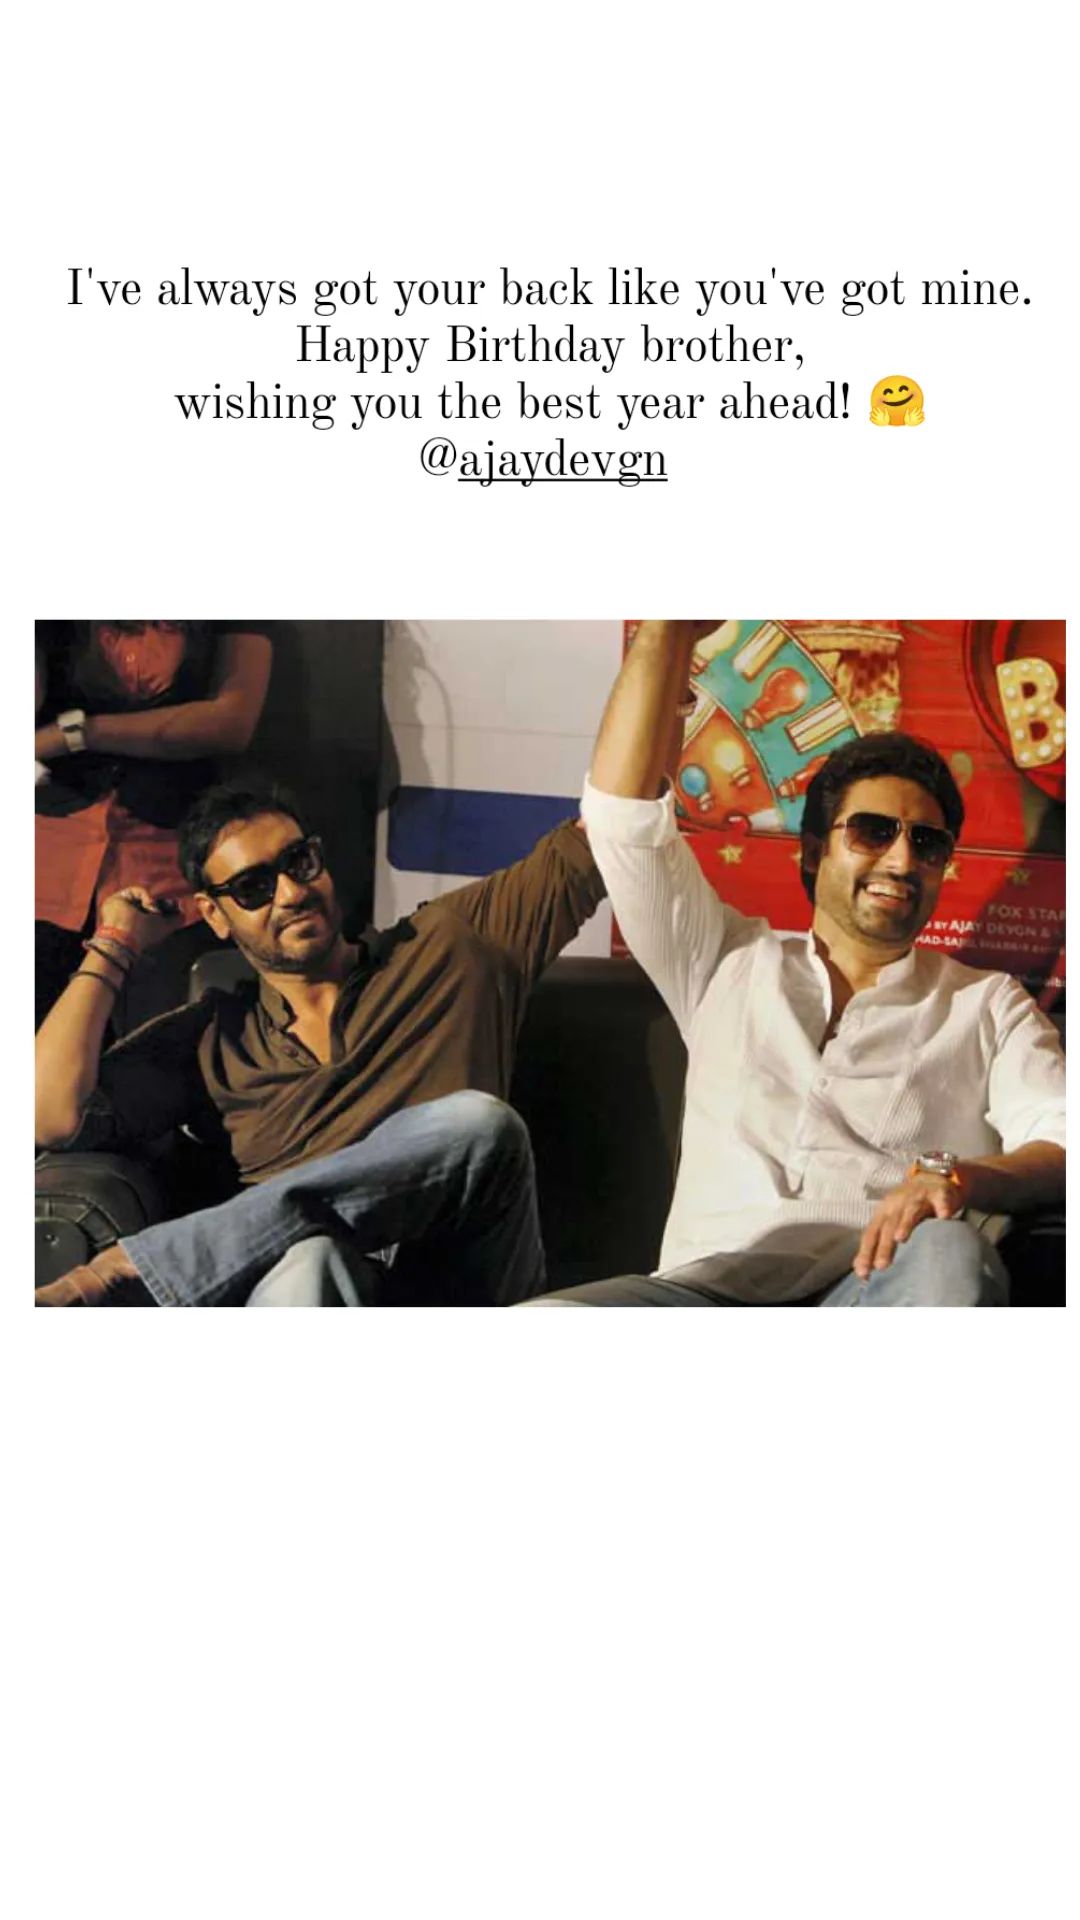 Abhishek Bachchan wishes Ajay Devgn